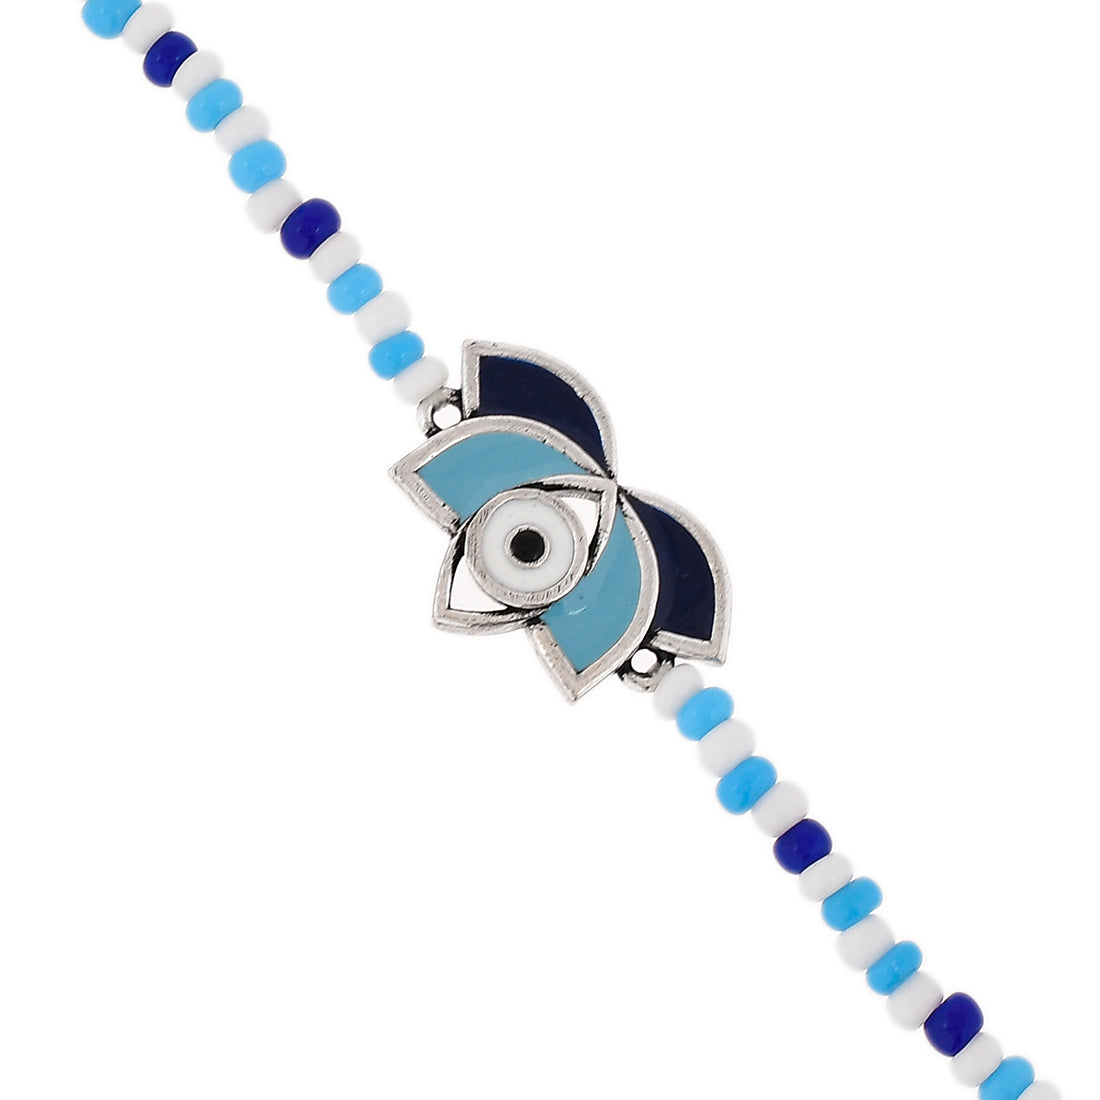 Women's Evil Eye Lotus Shape Blue-White Beads Chain Bracelet - Voylla